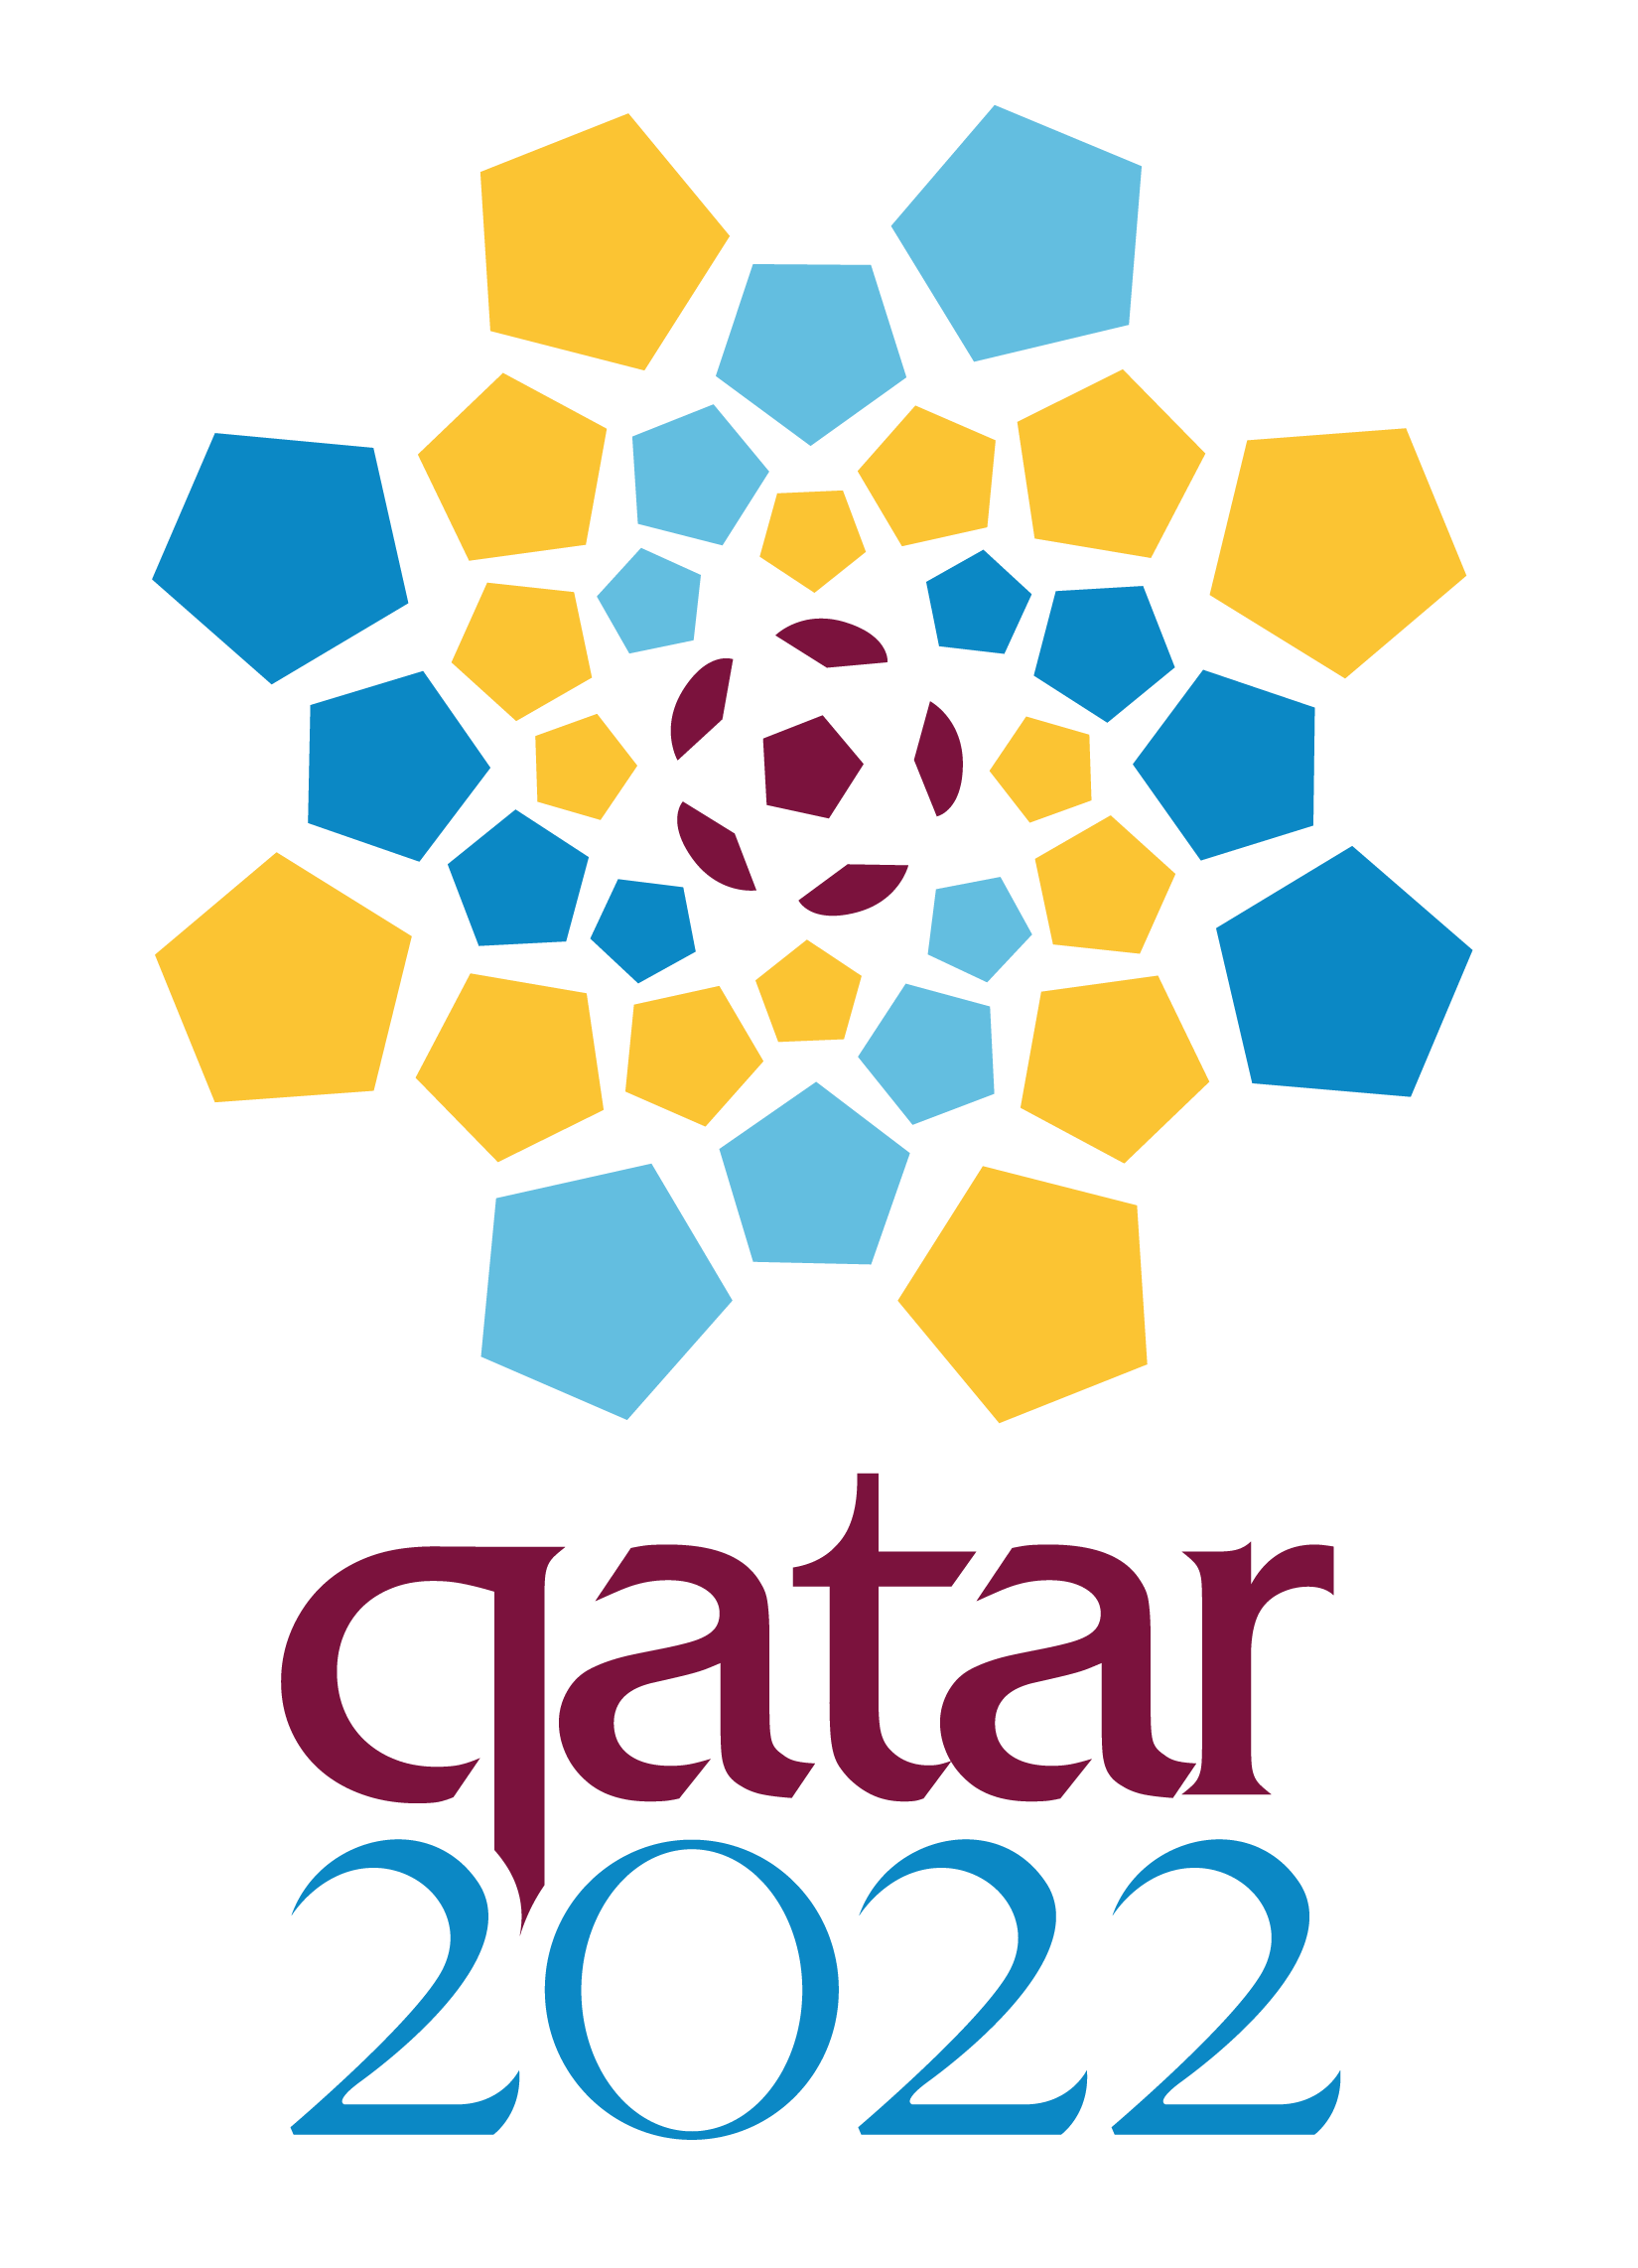 qatar-2022-logo-fussball-wm-fifa-01